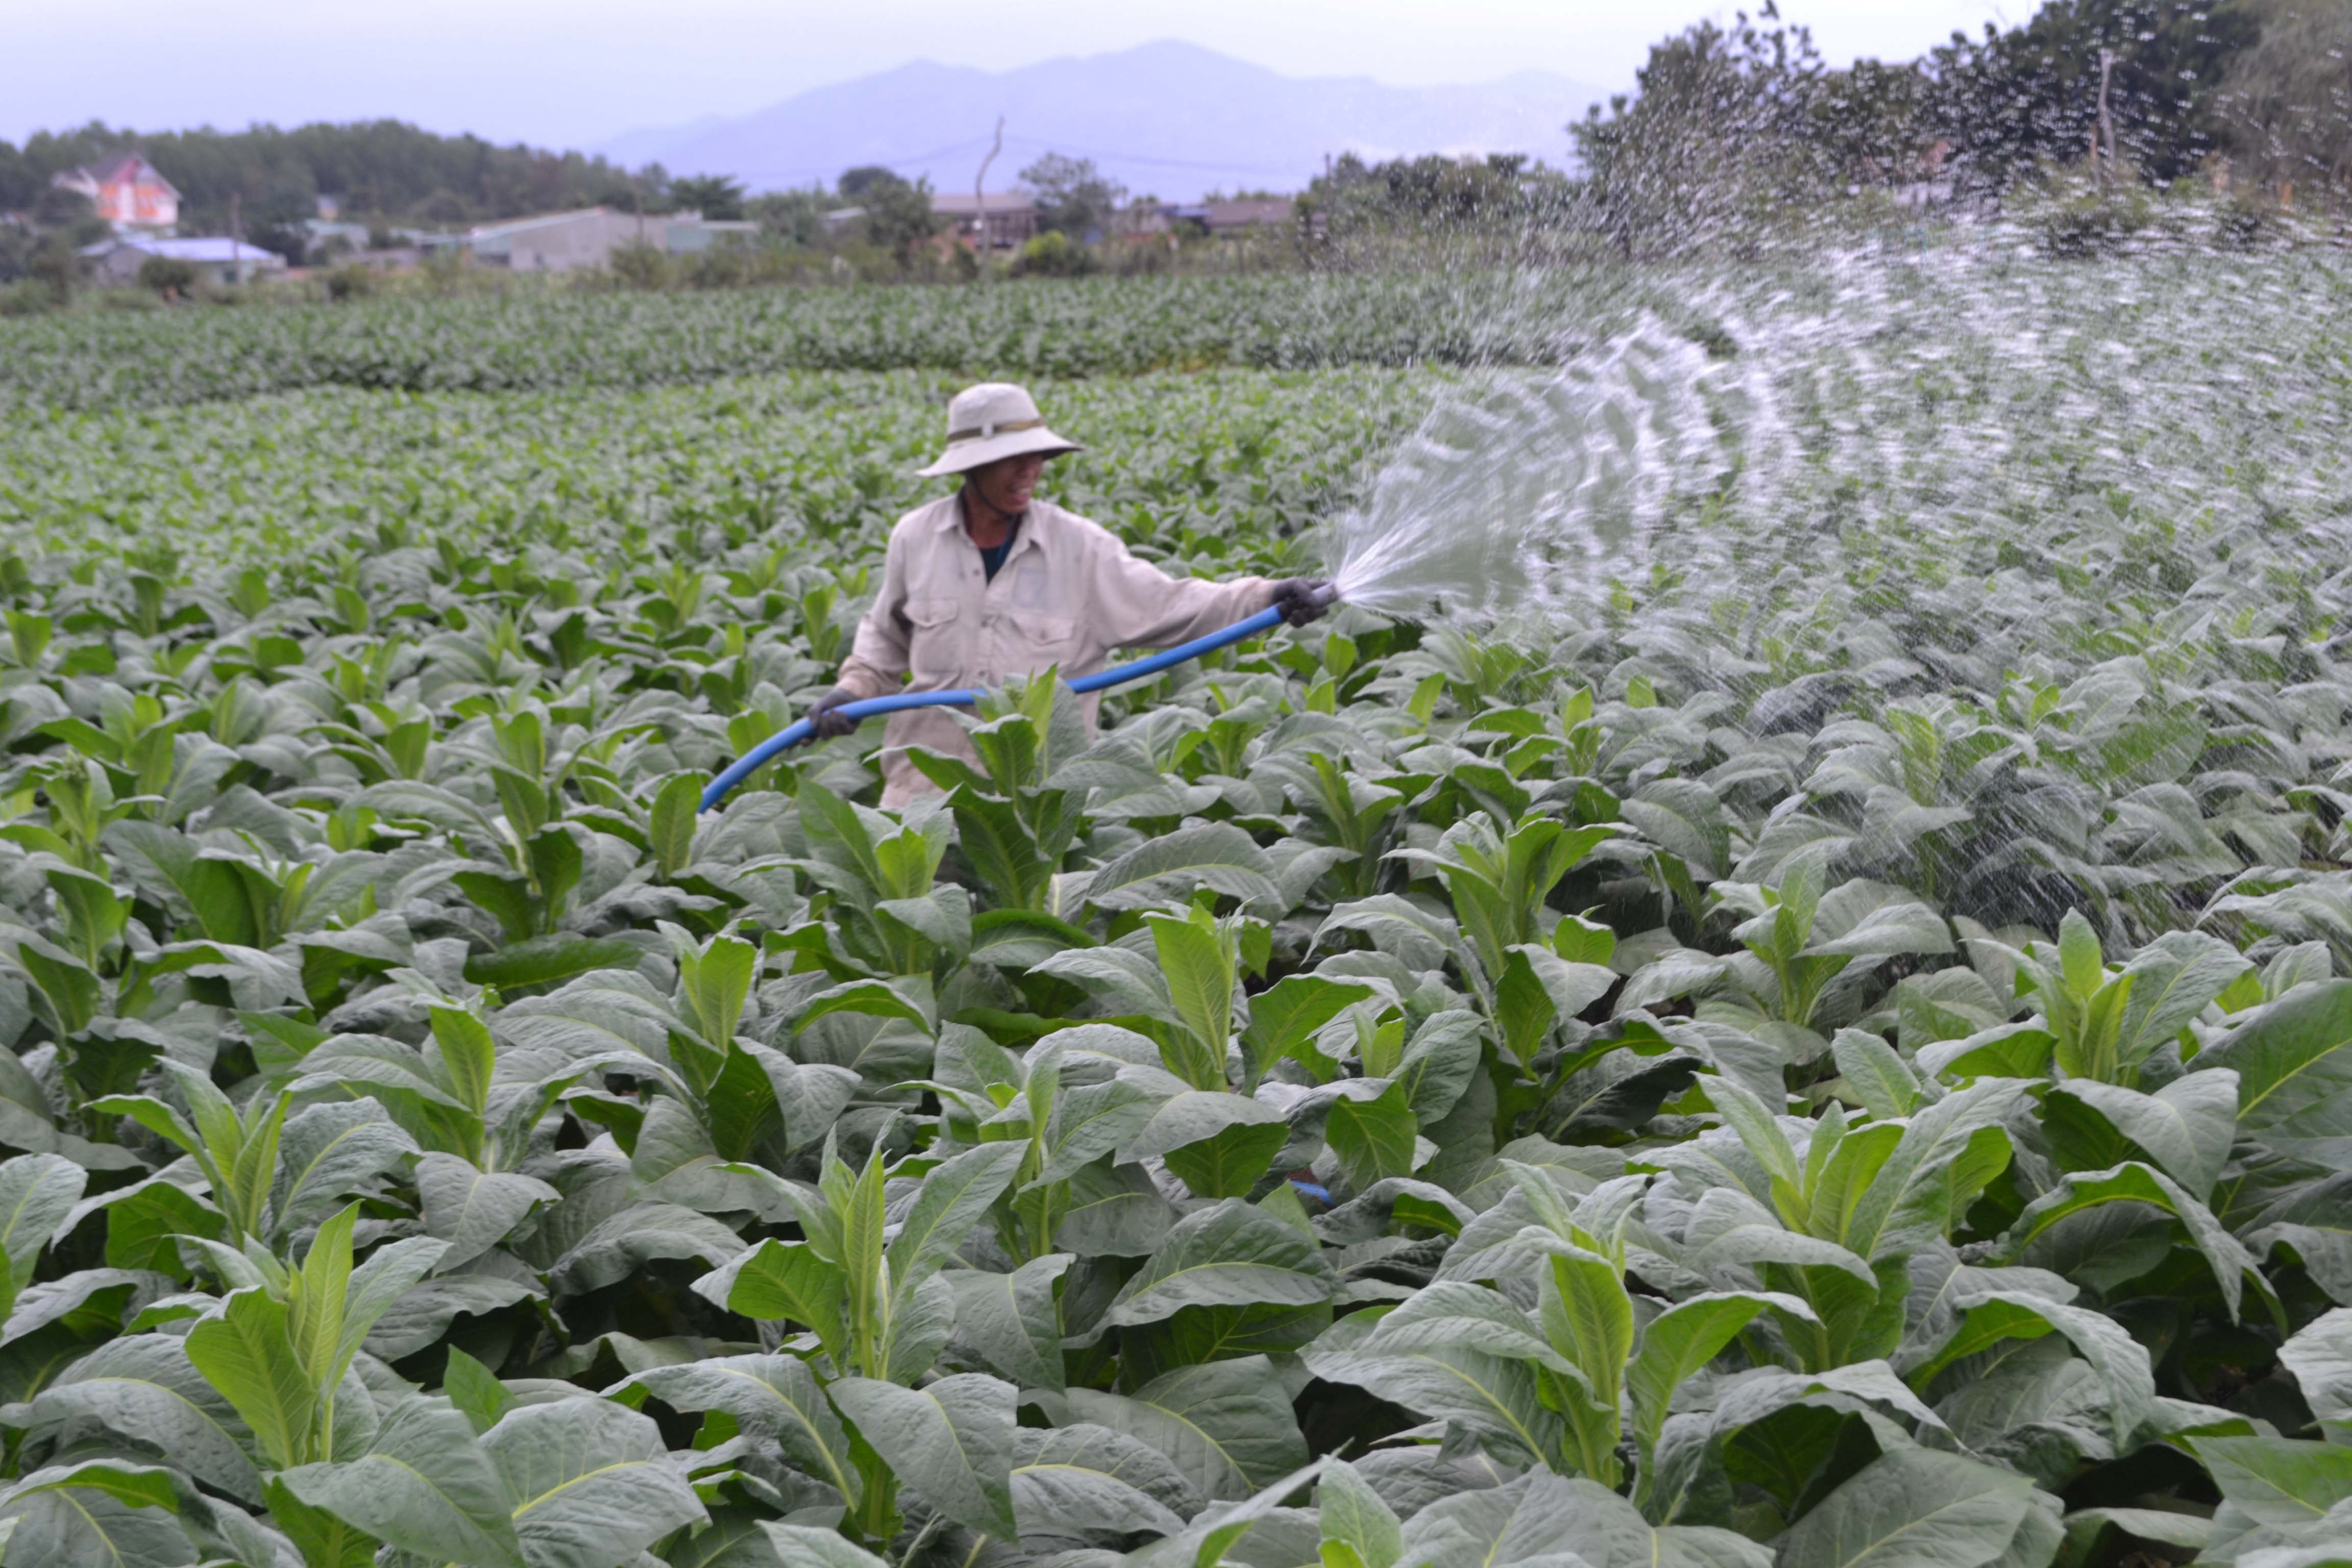 Người dân huyện Ia Pa chuyển đổi đất kém hiệu quả sang trồng cây thuốc lá. Ảnh: Lê Nam